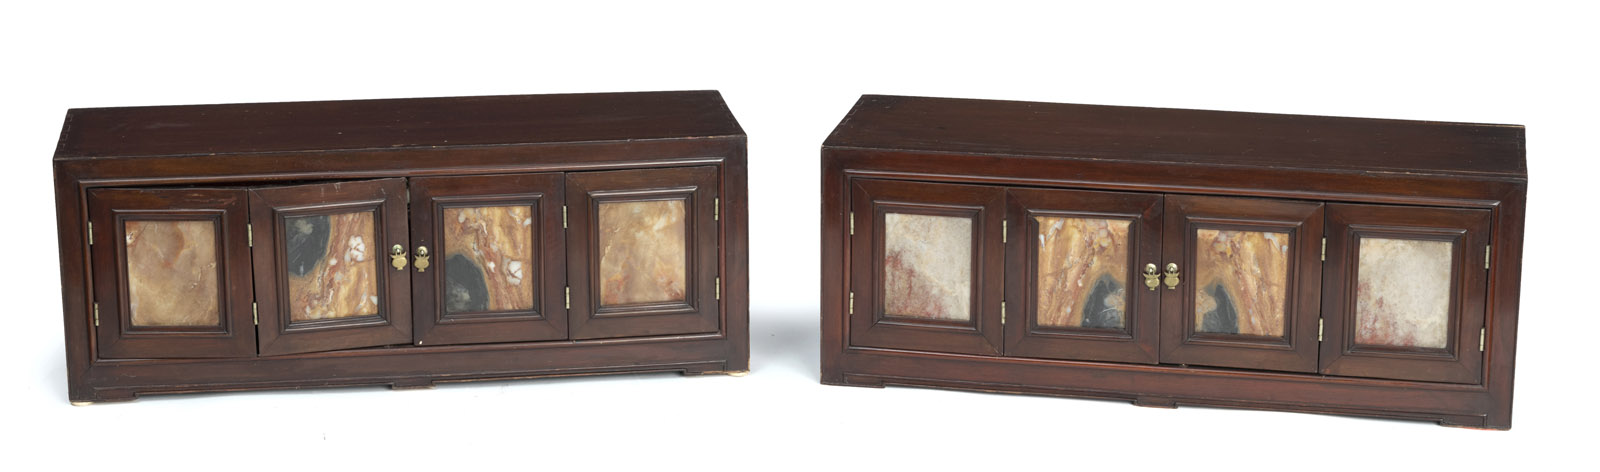 <b>Paar flache Holz-Schränke (mungab), jeweils mit zweiteiligen klappbaren Türen, mit Marmorpaneelen eingelegt</b>